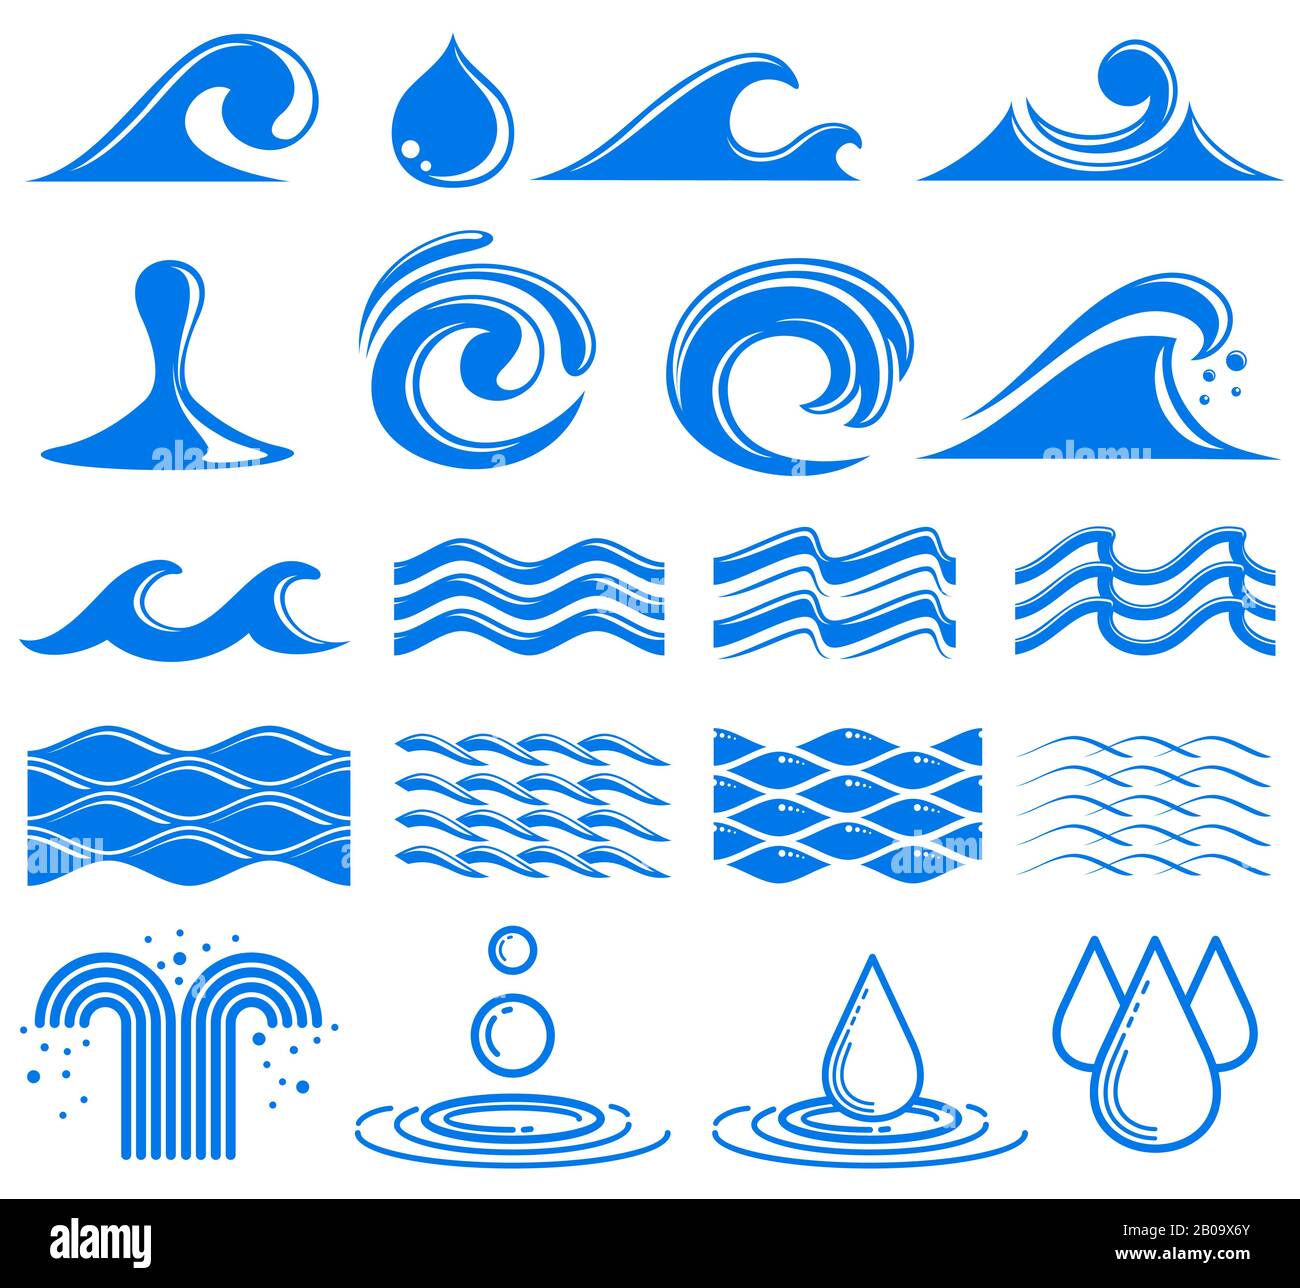 Kurven und Wasser-Vektor-Symbole. Set mit Wasserlogos, Welle und Brunnen, Abbildung des Wasserelements Stock Vektor